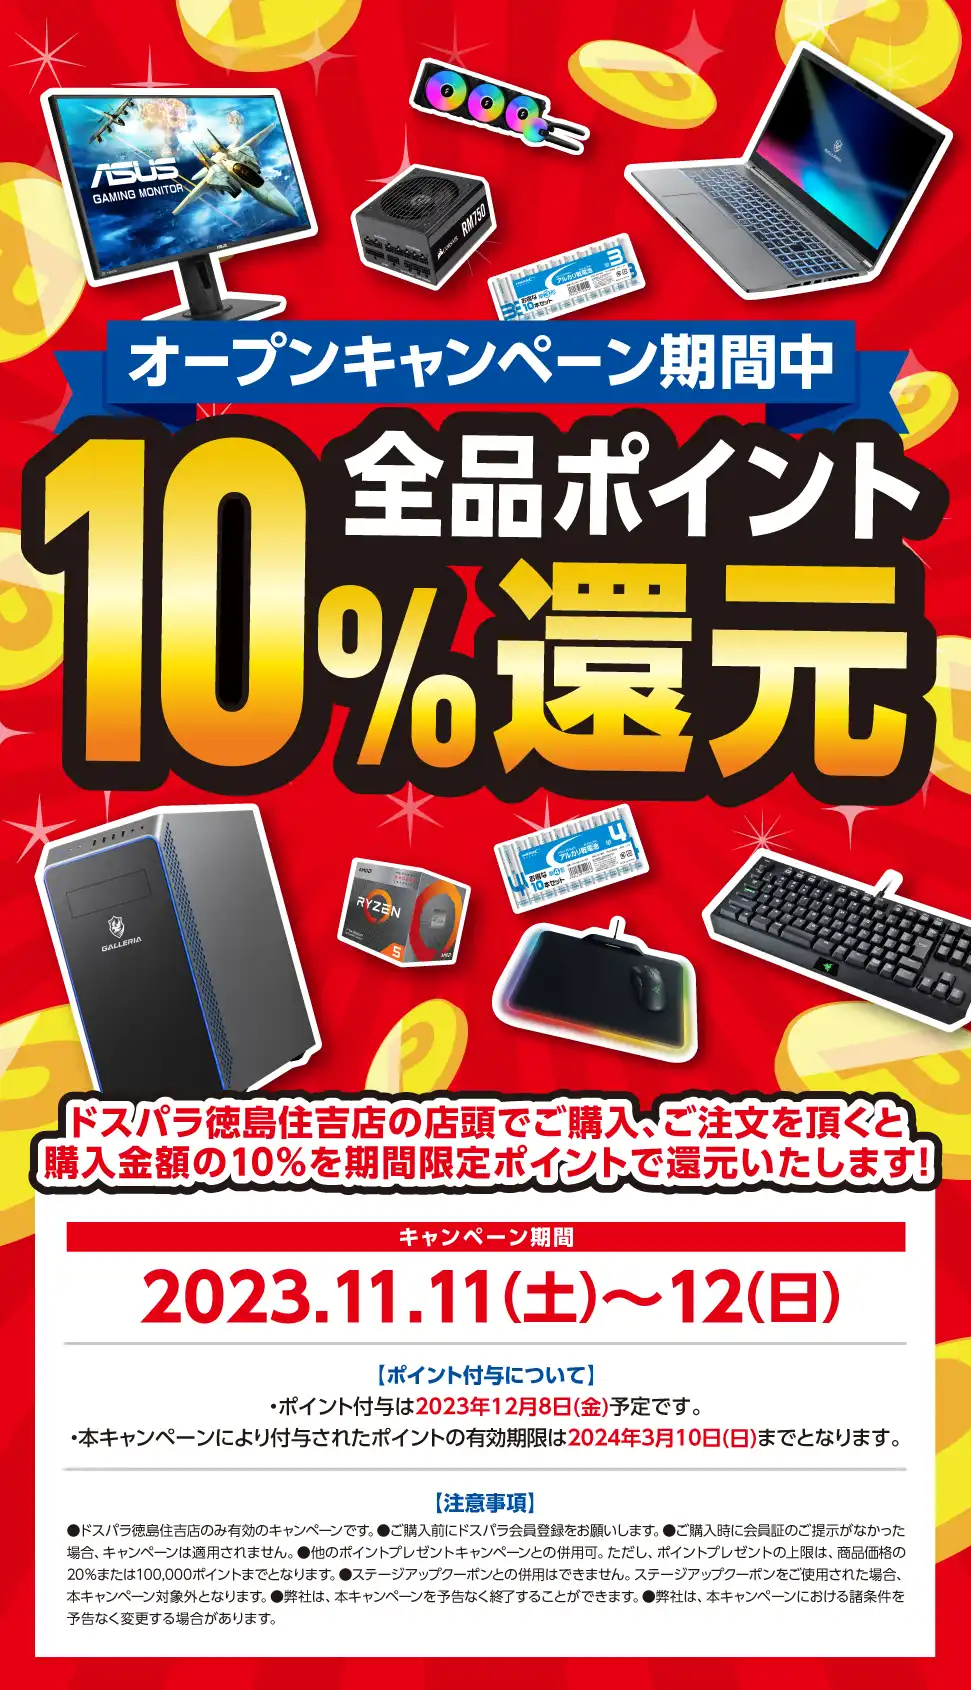 全品ポイント10%還元 2023年11月11日(土)～11月12日(日)   オープンセール開催!